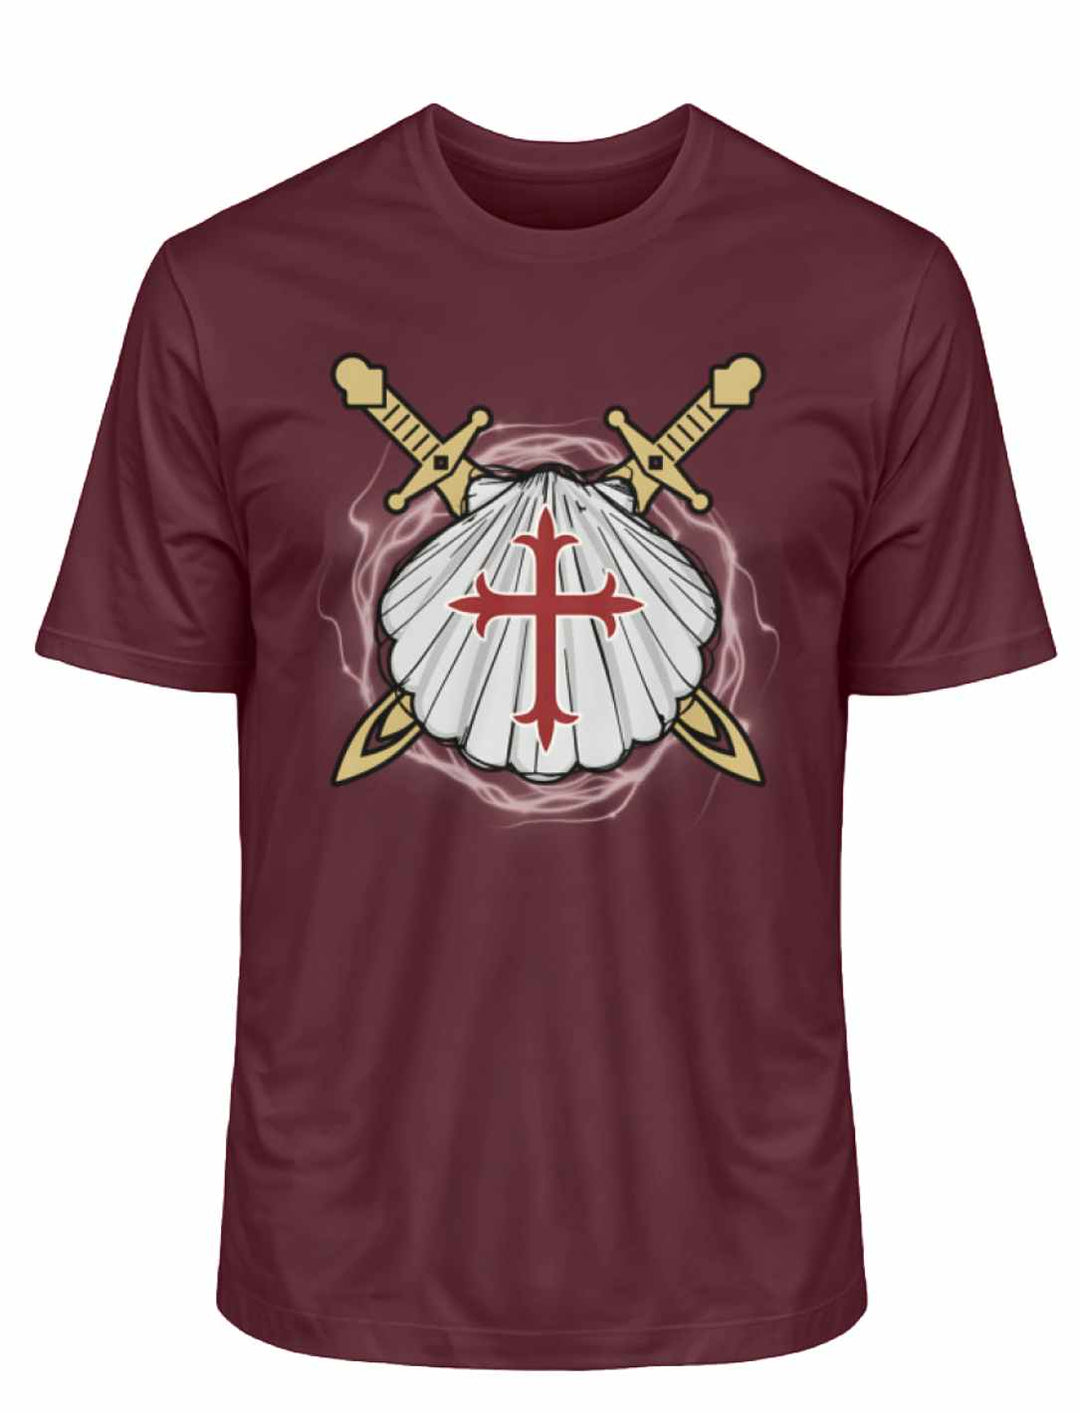 'Wächter des Sternenwegs' T-Shirt in Burgund, detailliert mit Jakobsmuschel und Schwertkreuz.